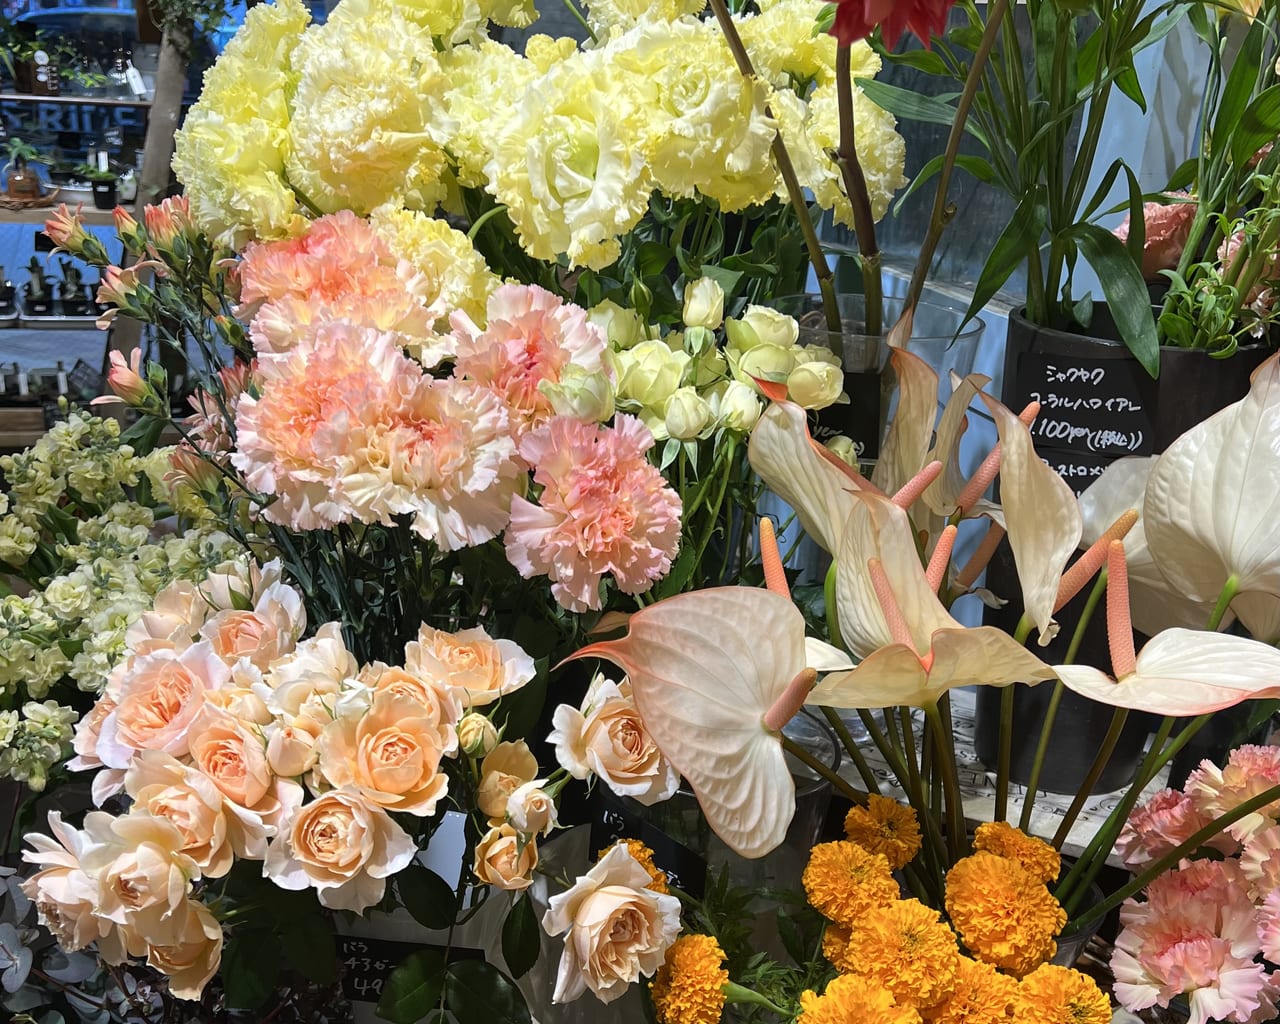 立川市 5月8日 日 ルミネ1階のお花屋さん フルラージュアンでカーネーションを買いました 号外net 立川市 昭島市